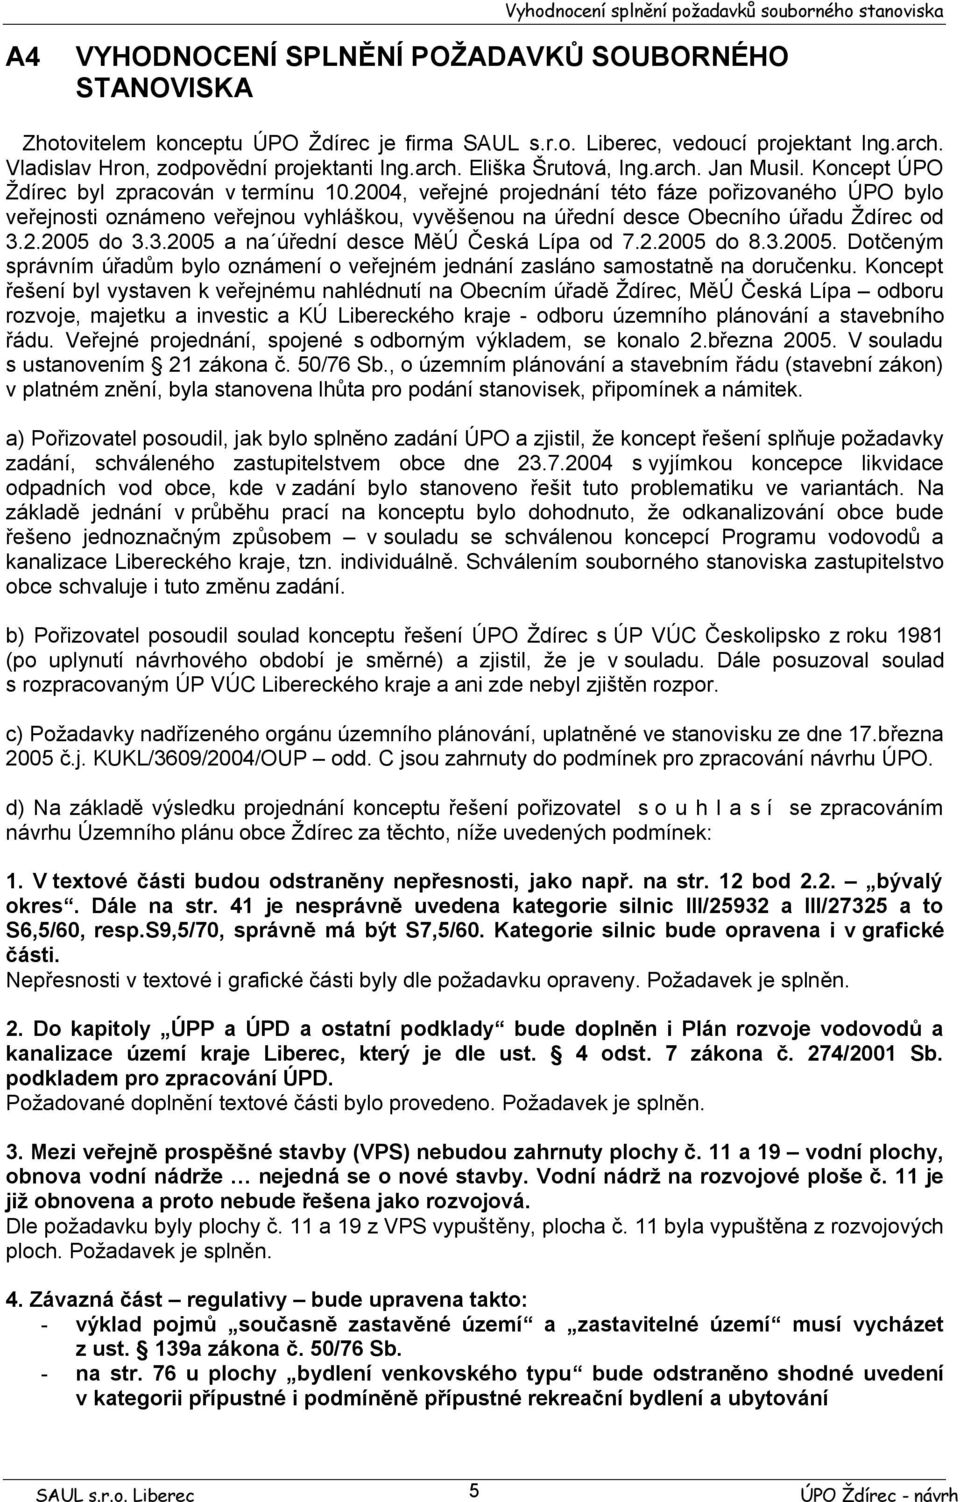 2004, veřejné projednání této fáze pořizovaného ÚPO bylo veřejnosti oznámeno veřejnou vyhláškou, vyvěšenou na úřední desce Obecního úřadu Ždírec od 3.2.2005 do 3.3.2005 a na úřední desce MěÚ Česká Lípa od 7.